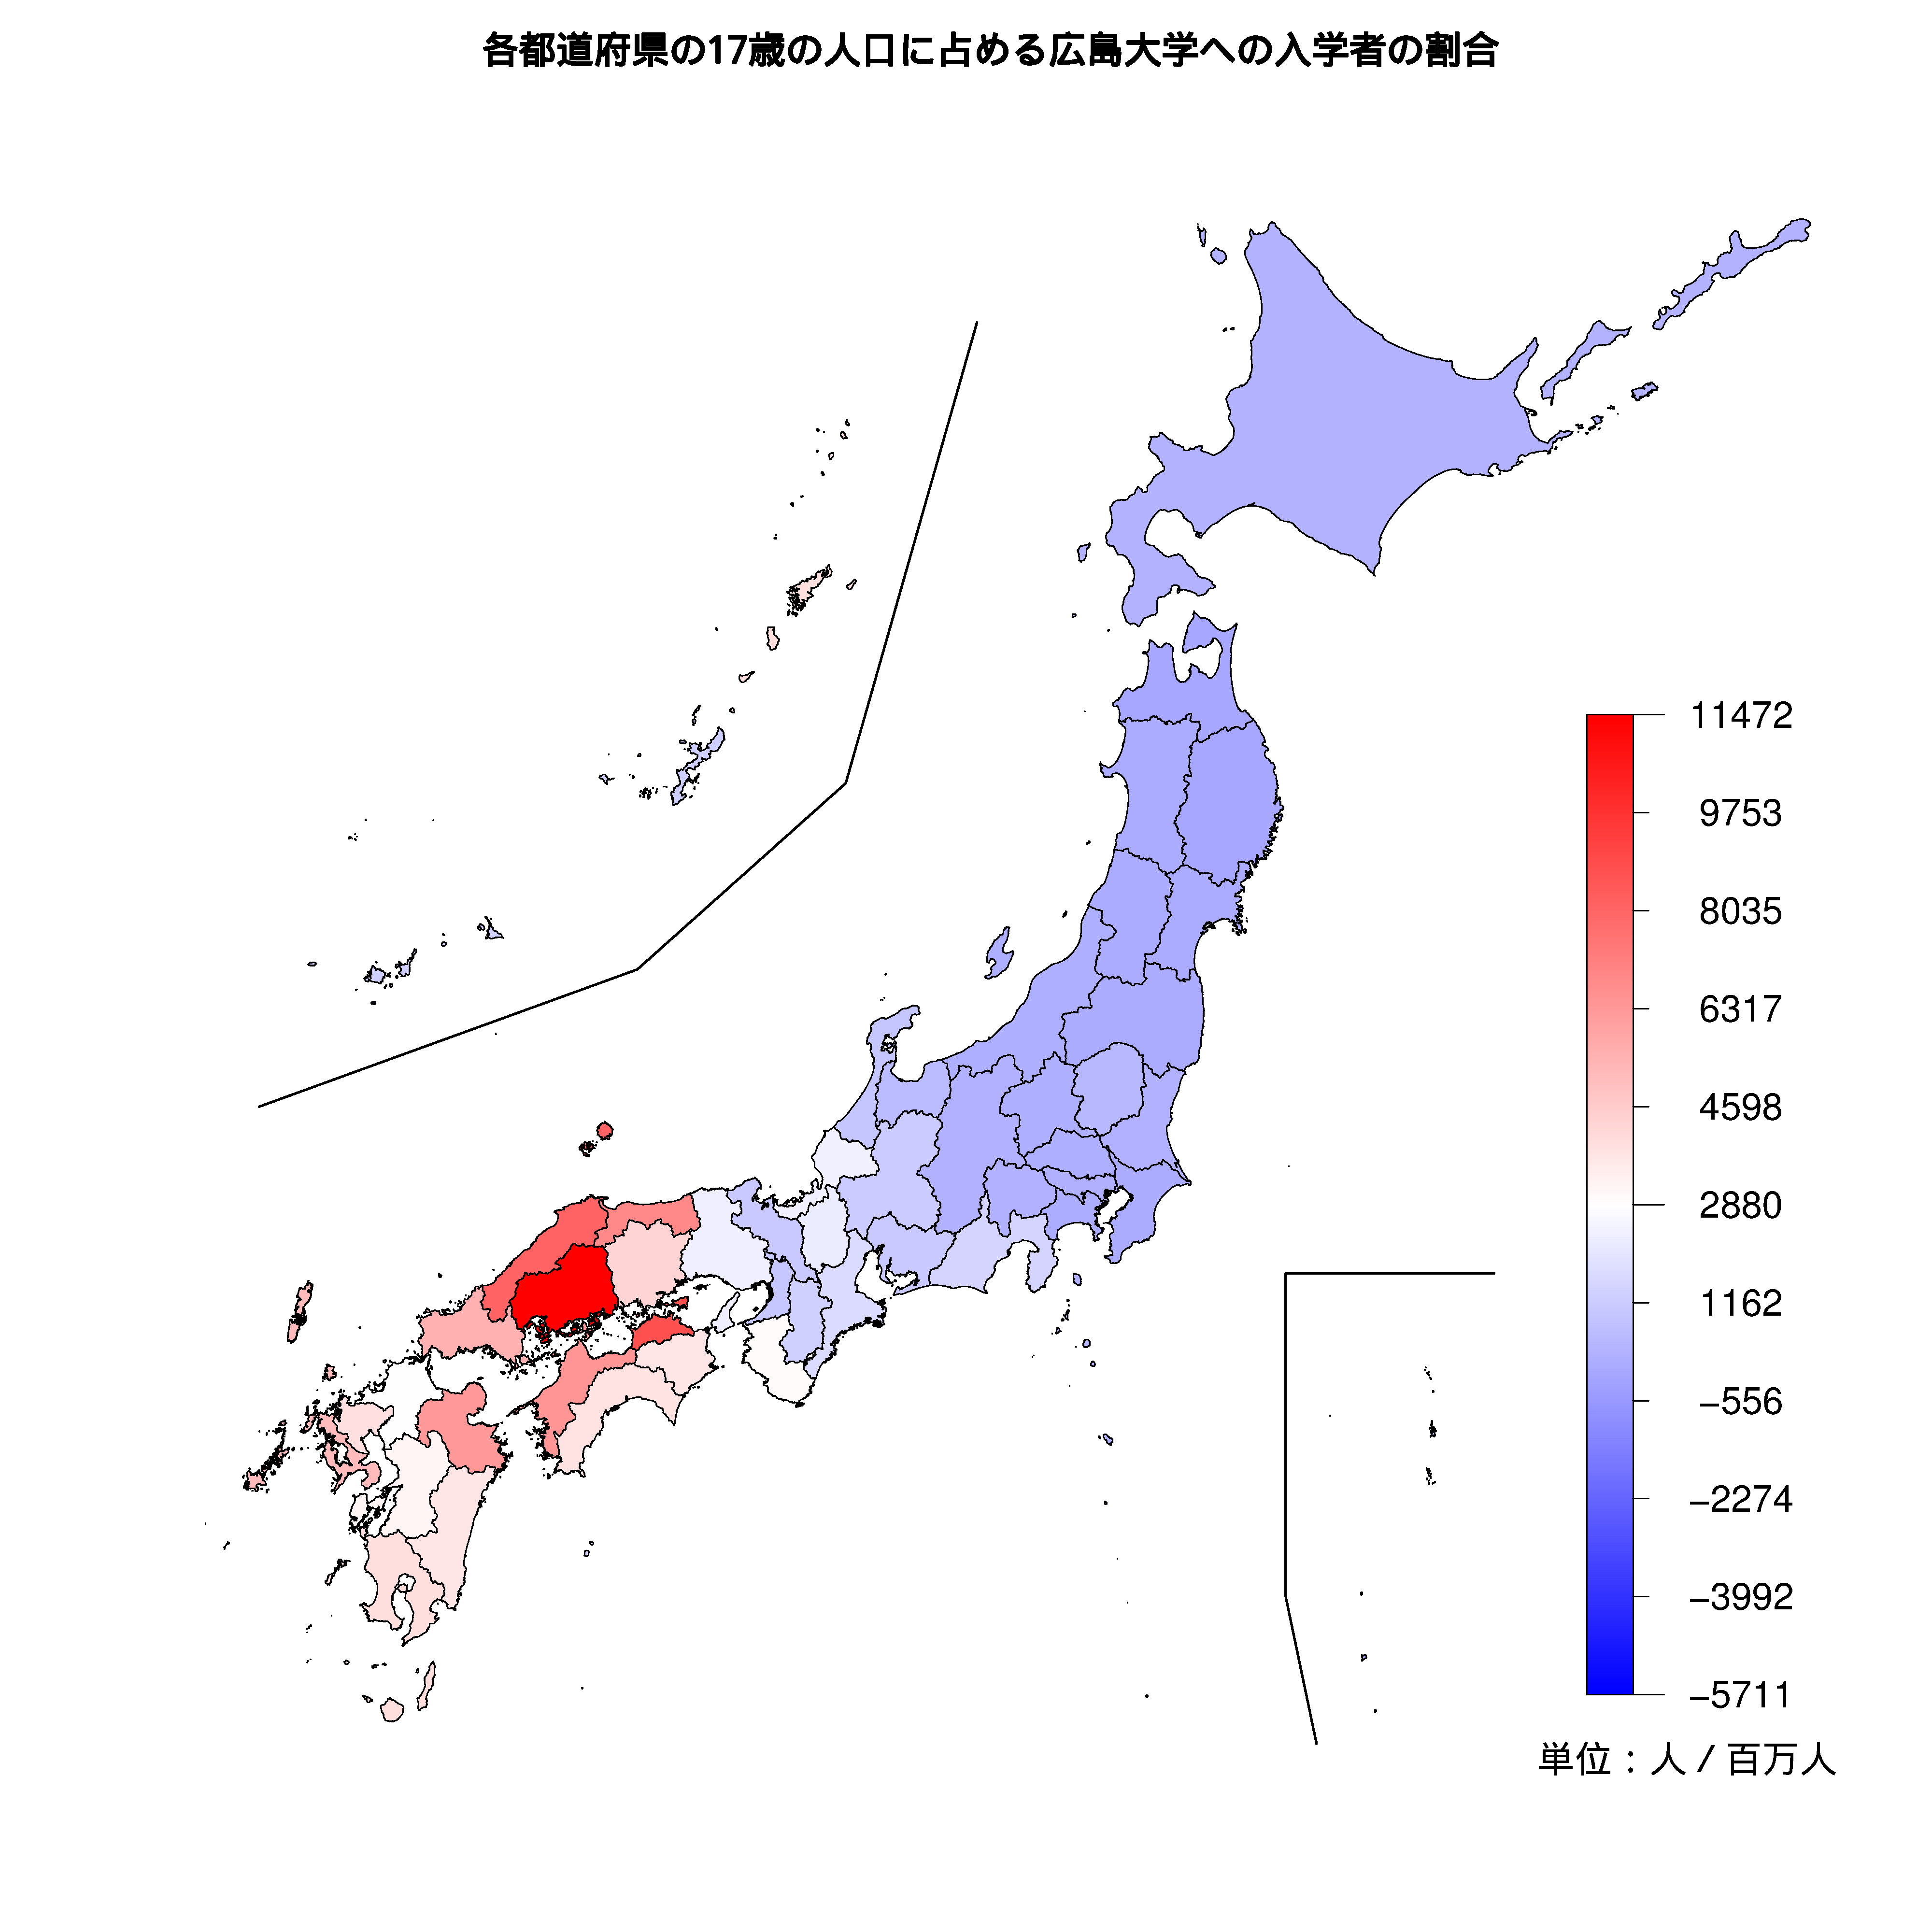 広島大学への入学者が多い都道府県の色分け地図